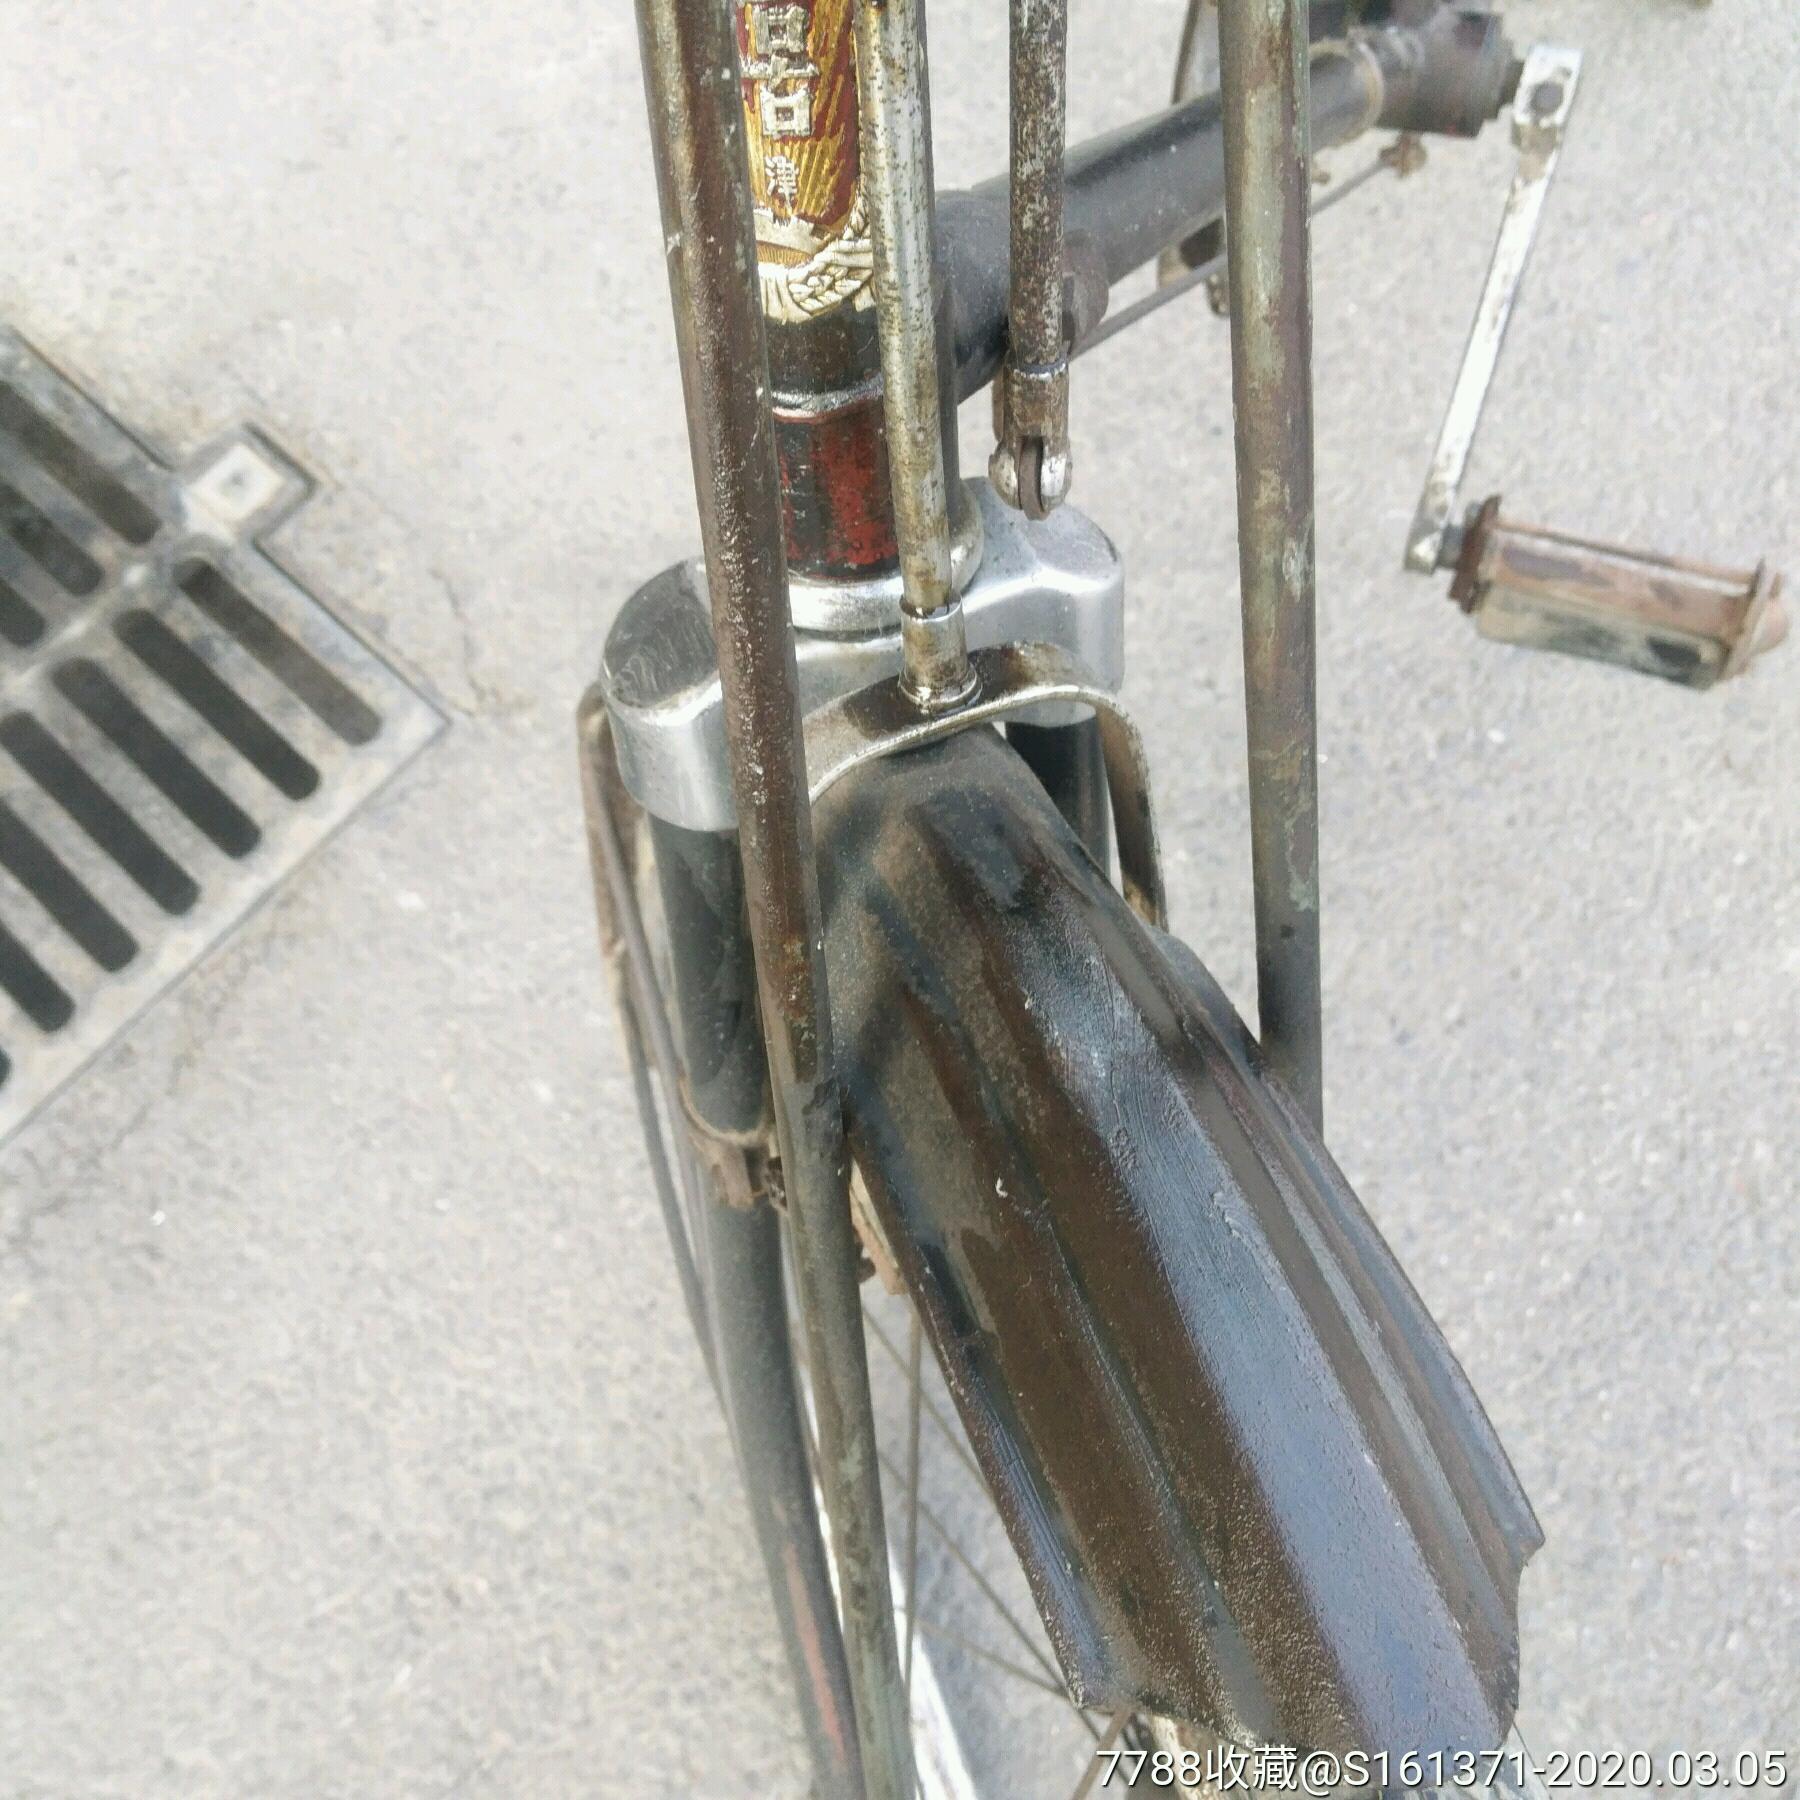 老式双缸自行车图片